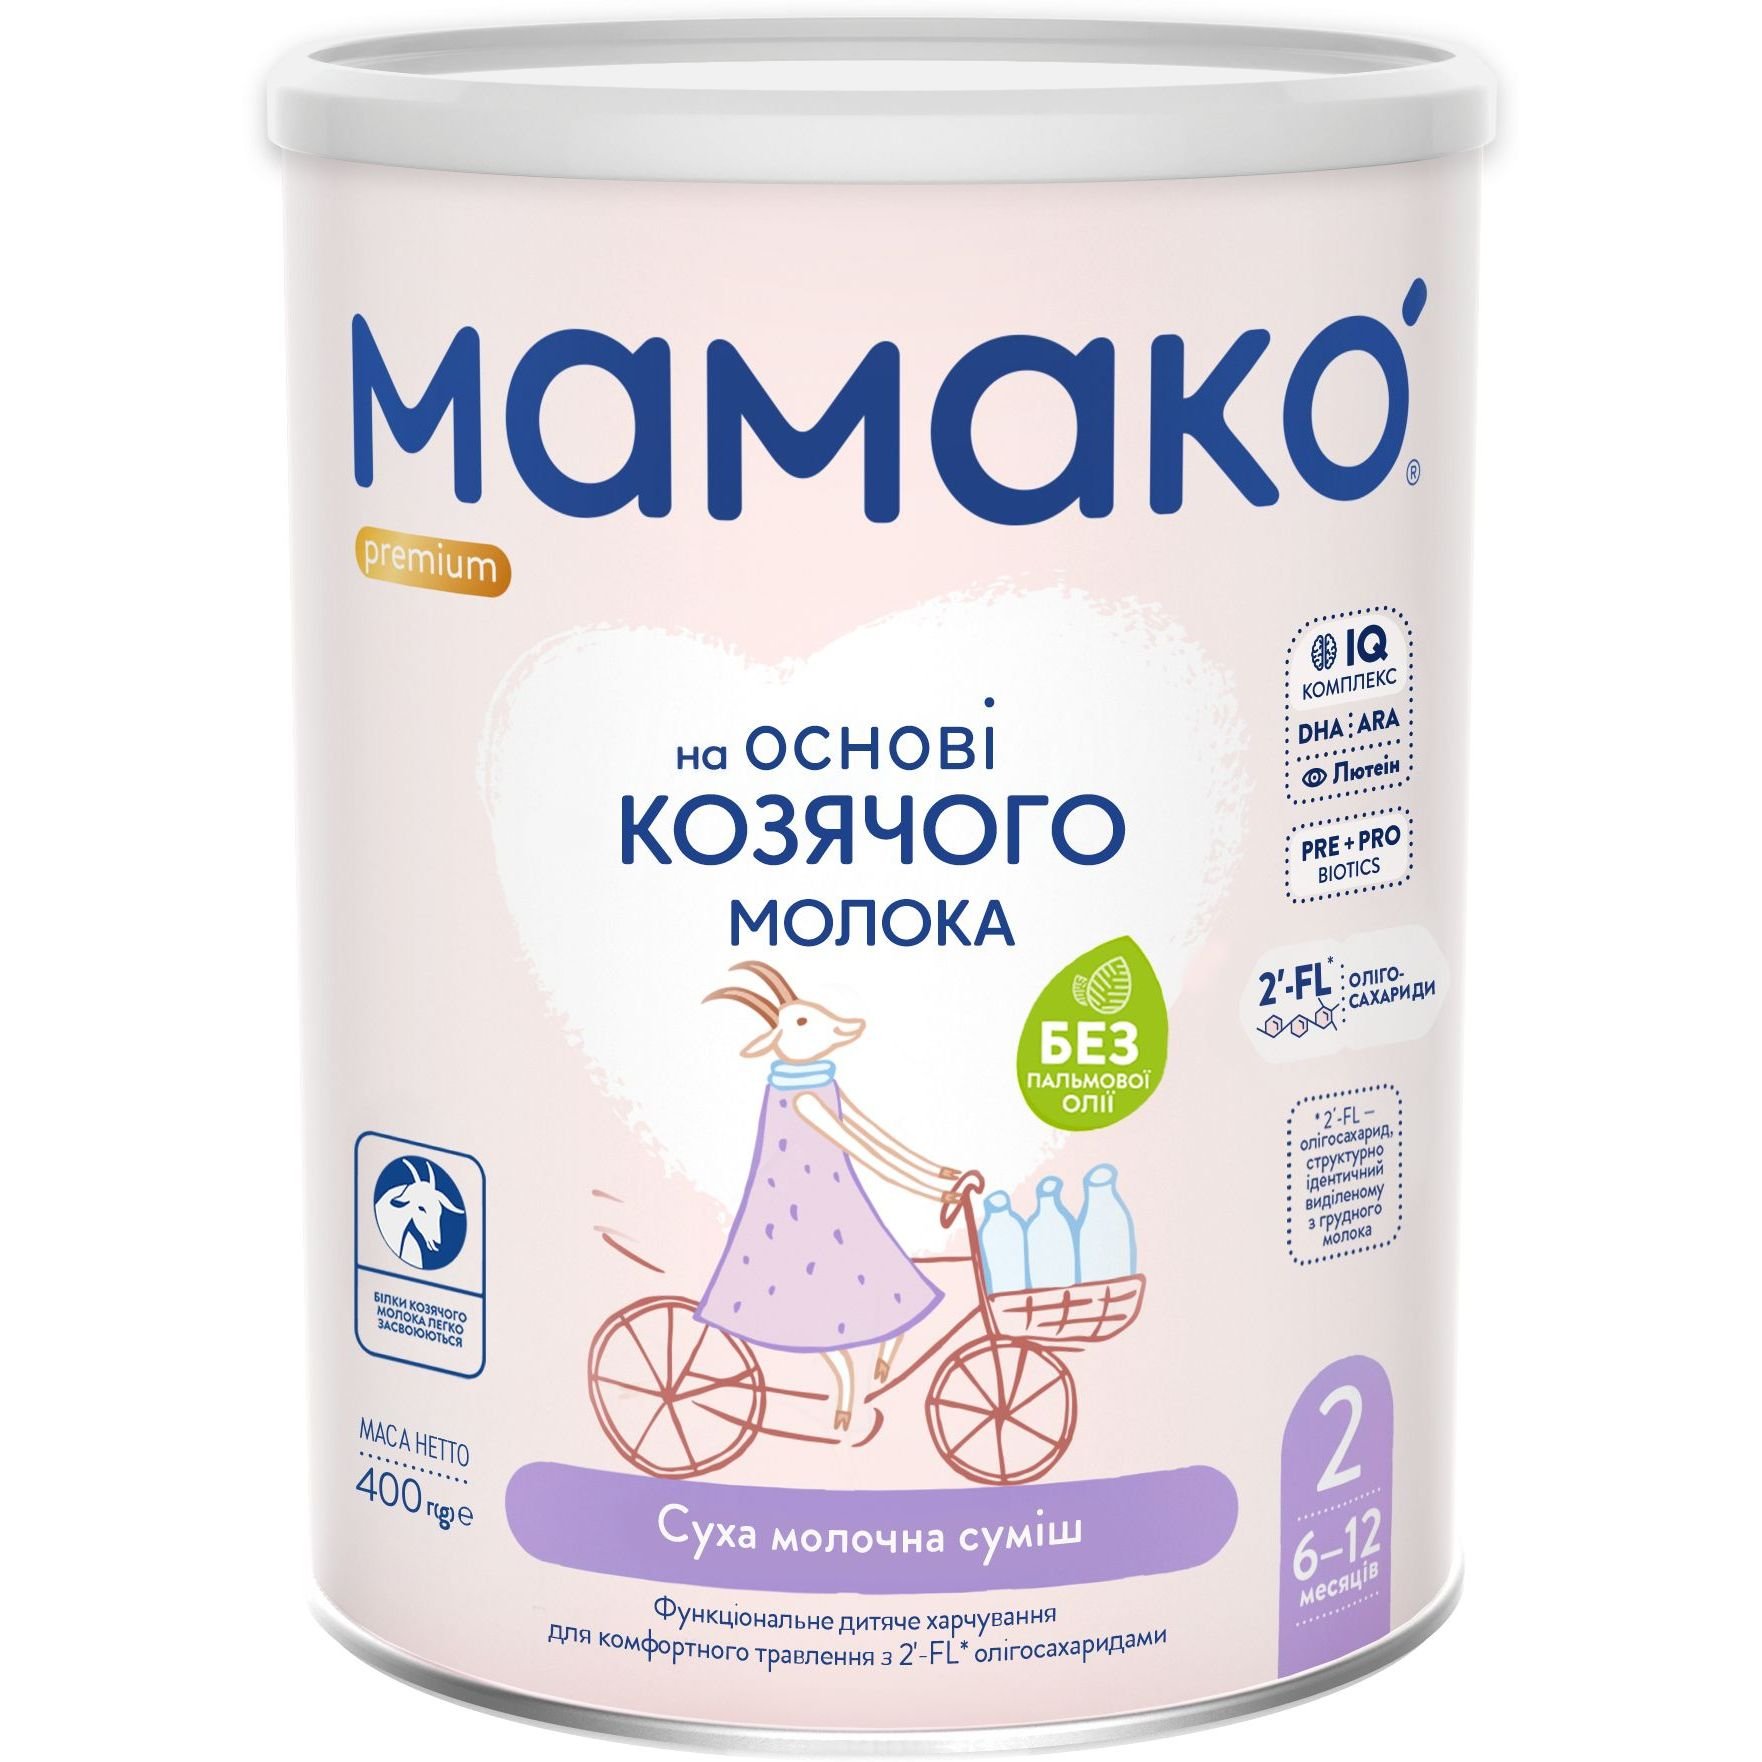 Суха молочна суміш МАМАКО Premium 2, 400 г - фото 1